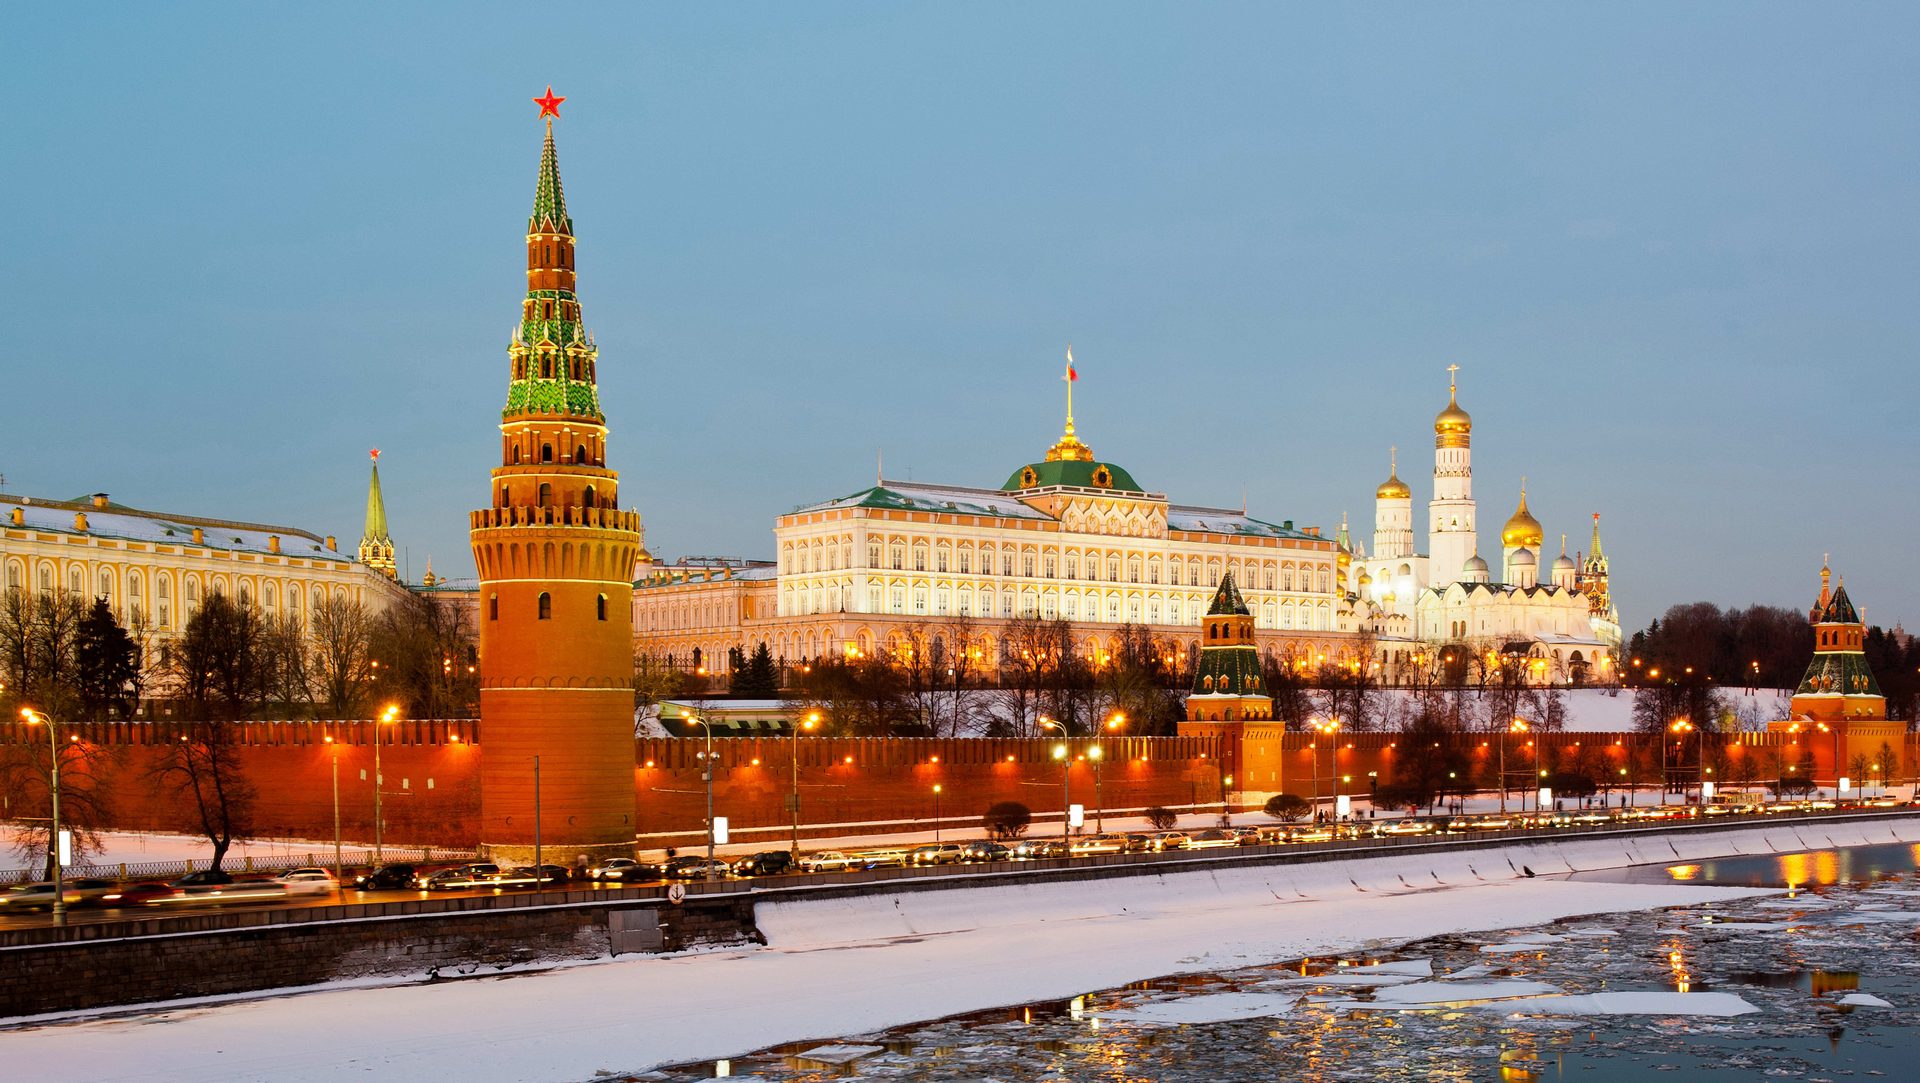 Le Kremlin à Moscou est un des symboles du 'russky mir' (monde russe) | citywallpaperhd.com)